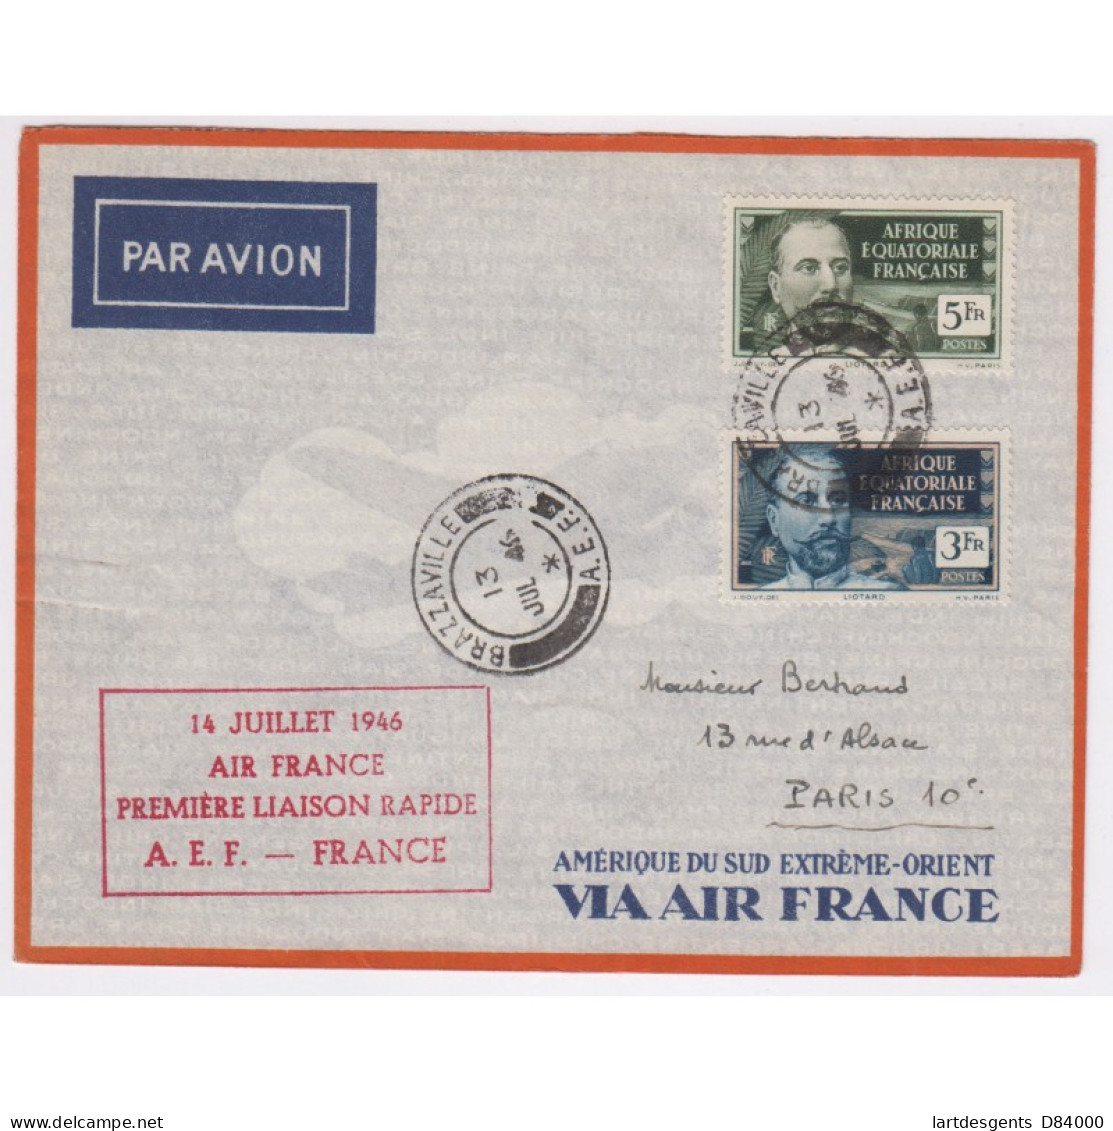 Rare LETTRE CACHET 1ère LIAISON AERIENNE RAPIDE  AEF - FRANCE 14/07/46  -  L'artdesgents.fr - Covers & Documents